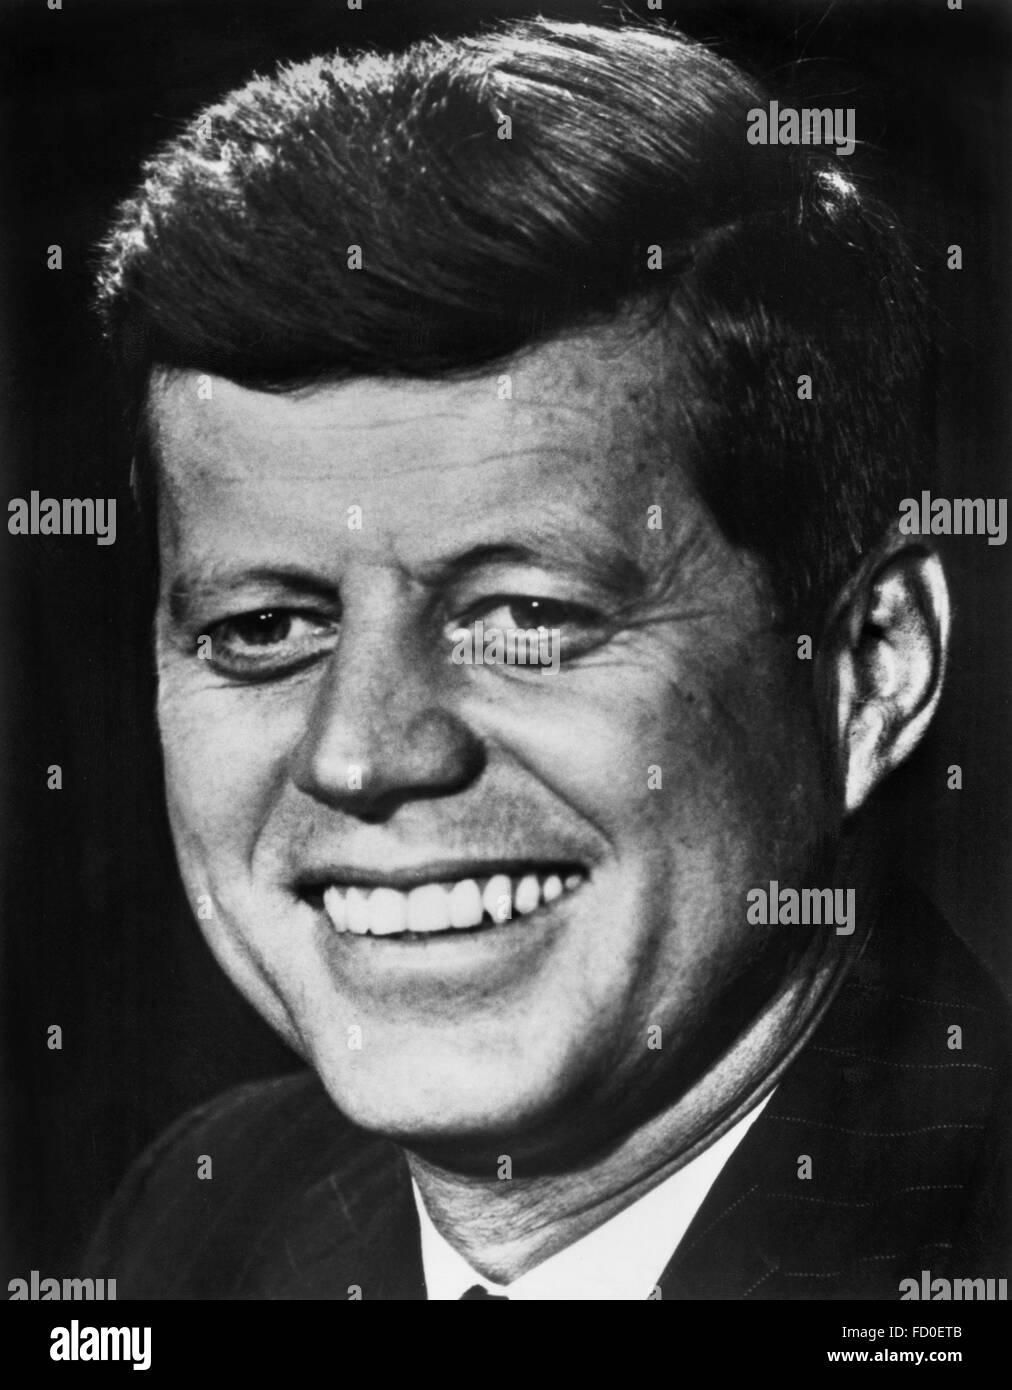 John F Kennedy, Porträt von der 35. Präsident der USA, 1962 Stockfoto